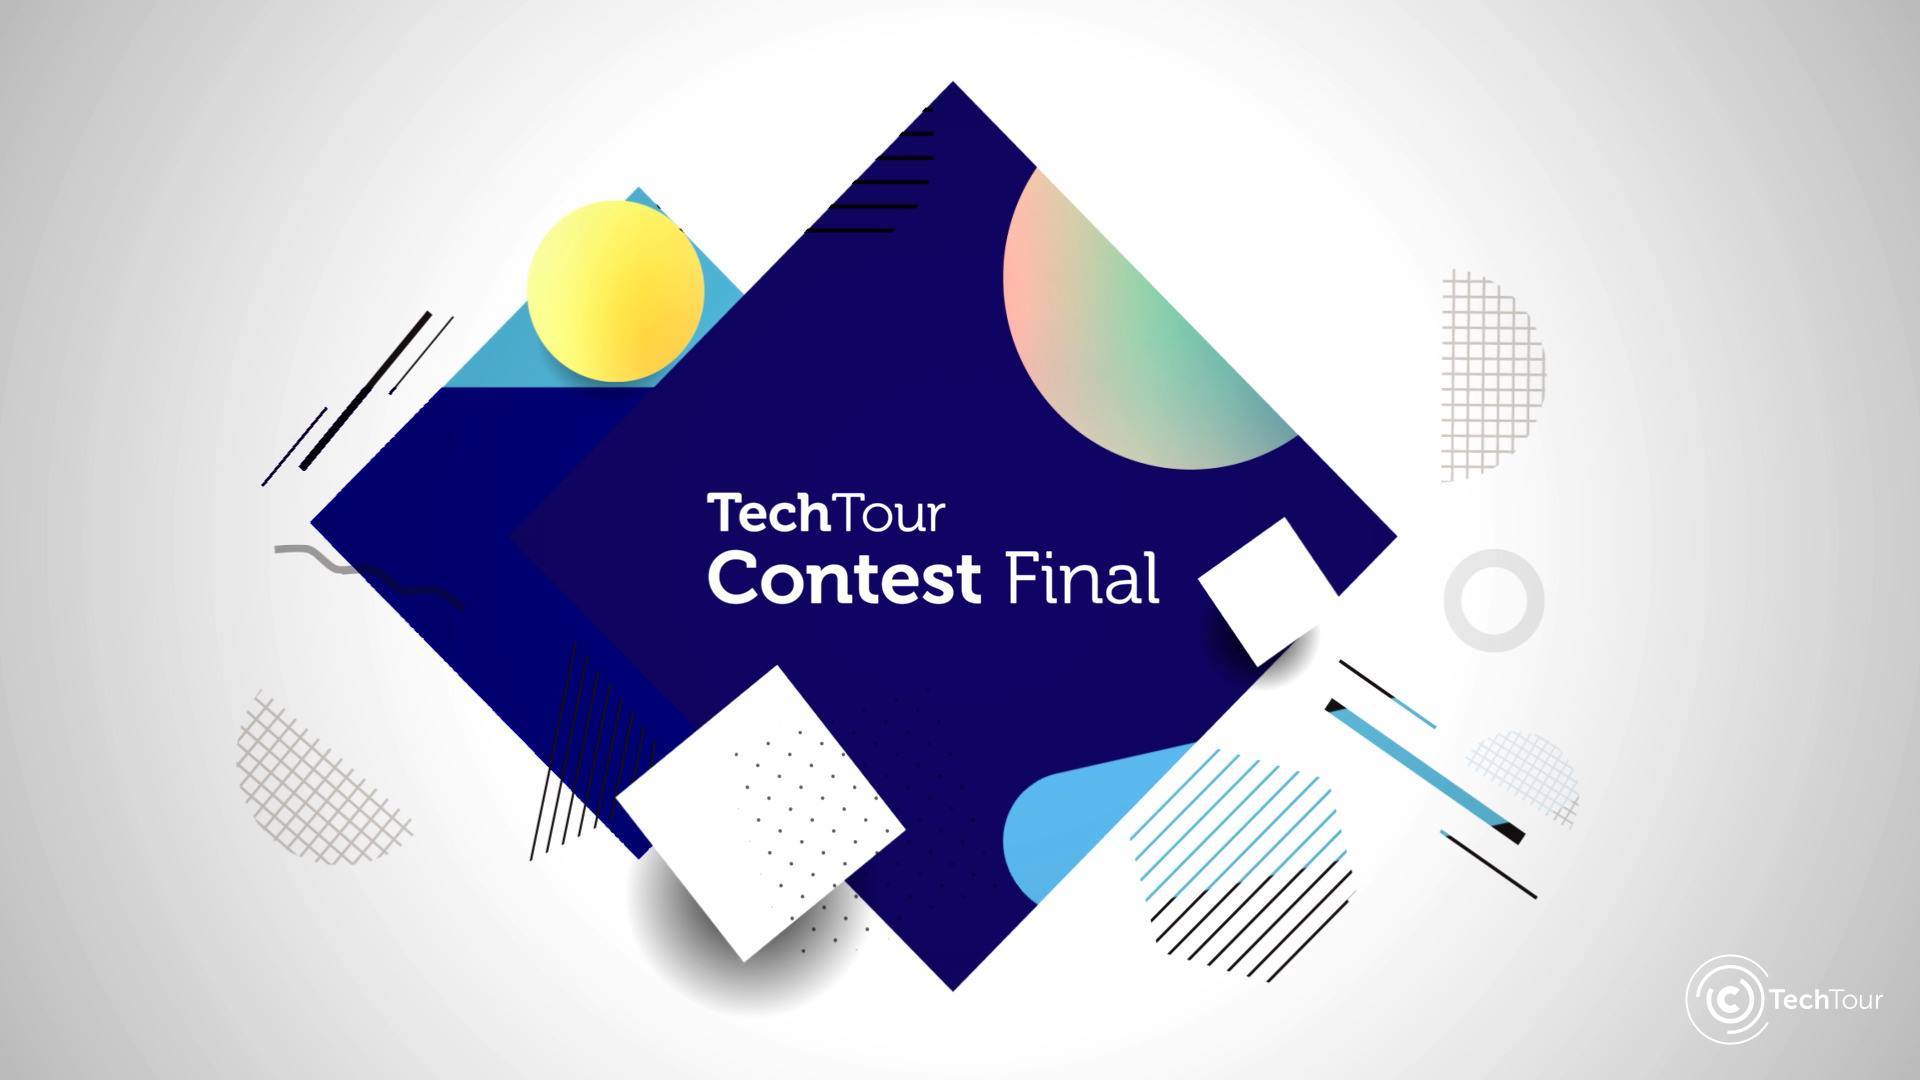 TechTour Contest Final 2019